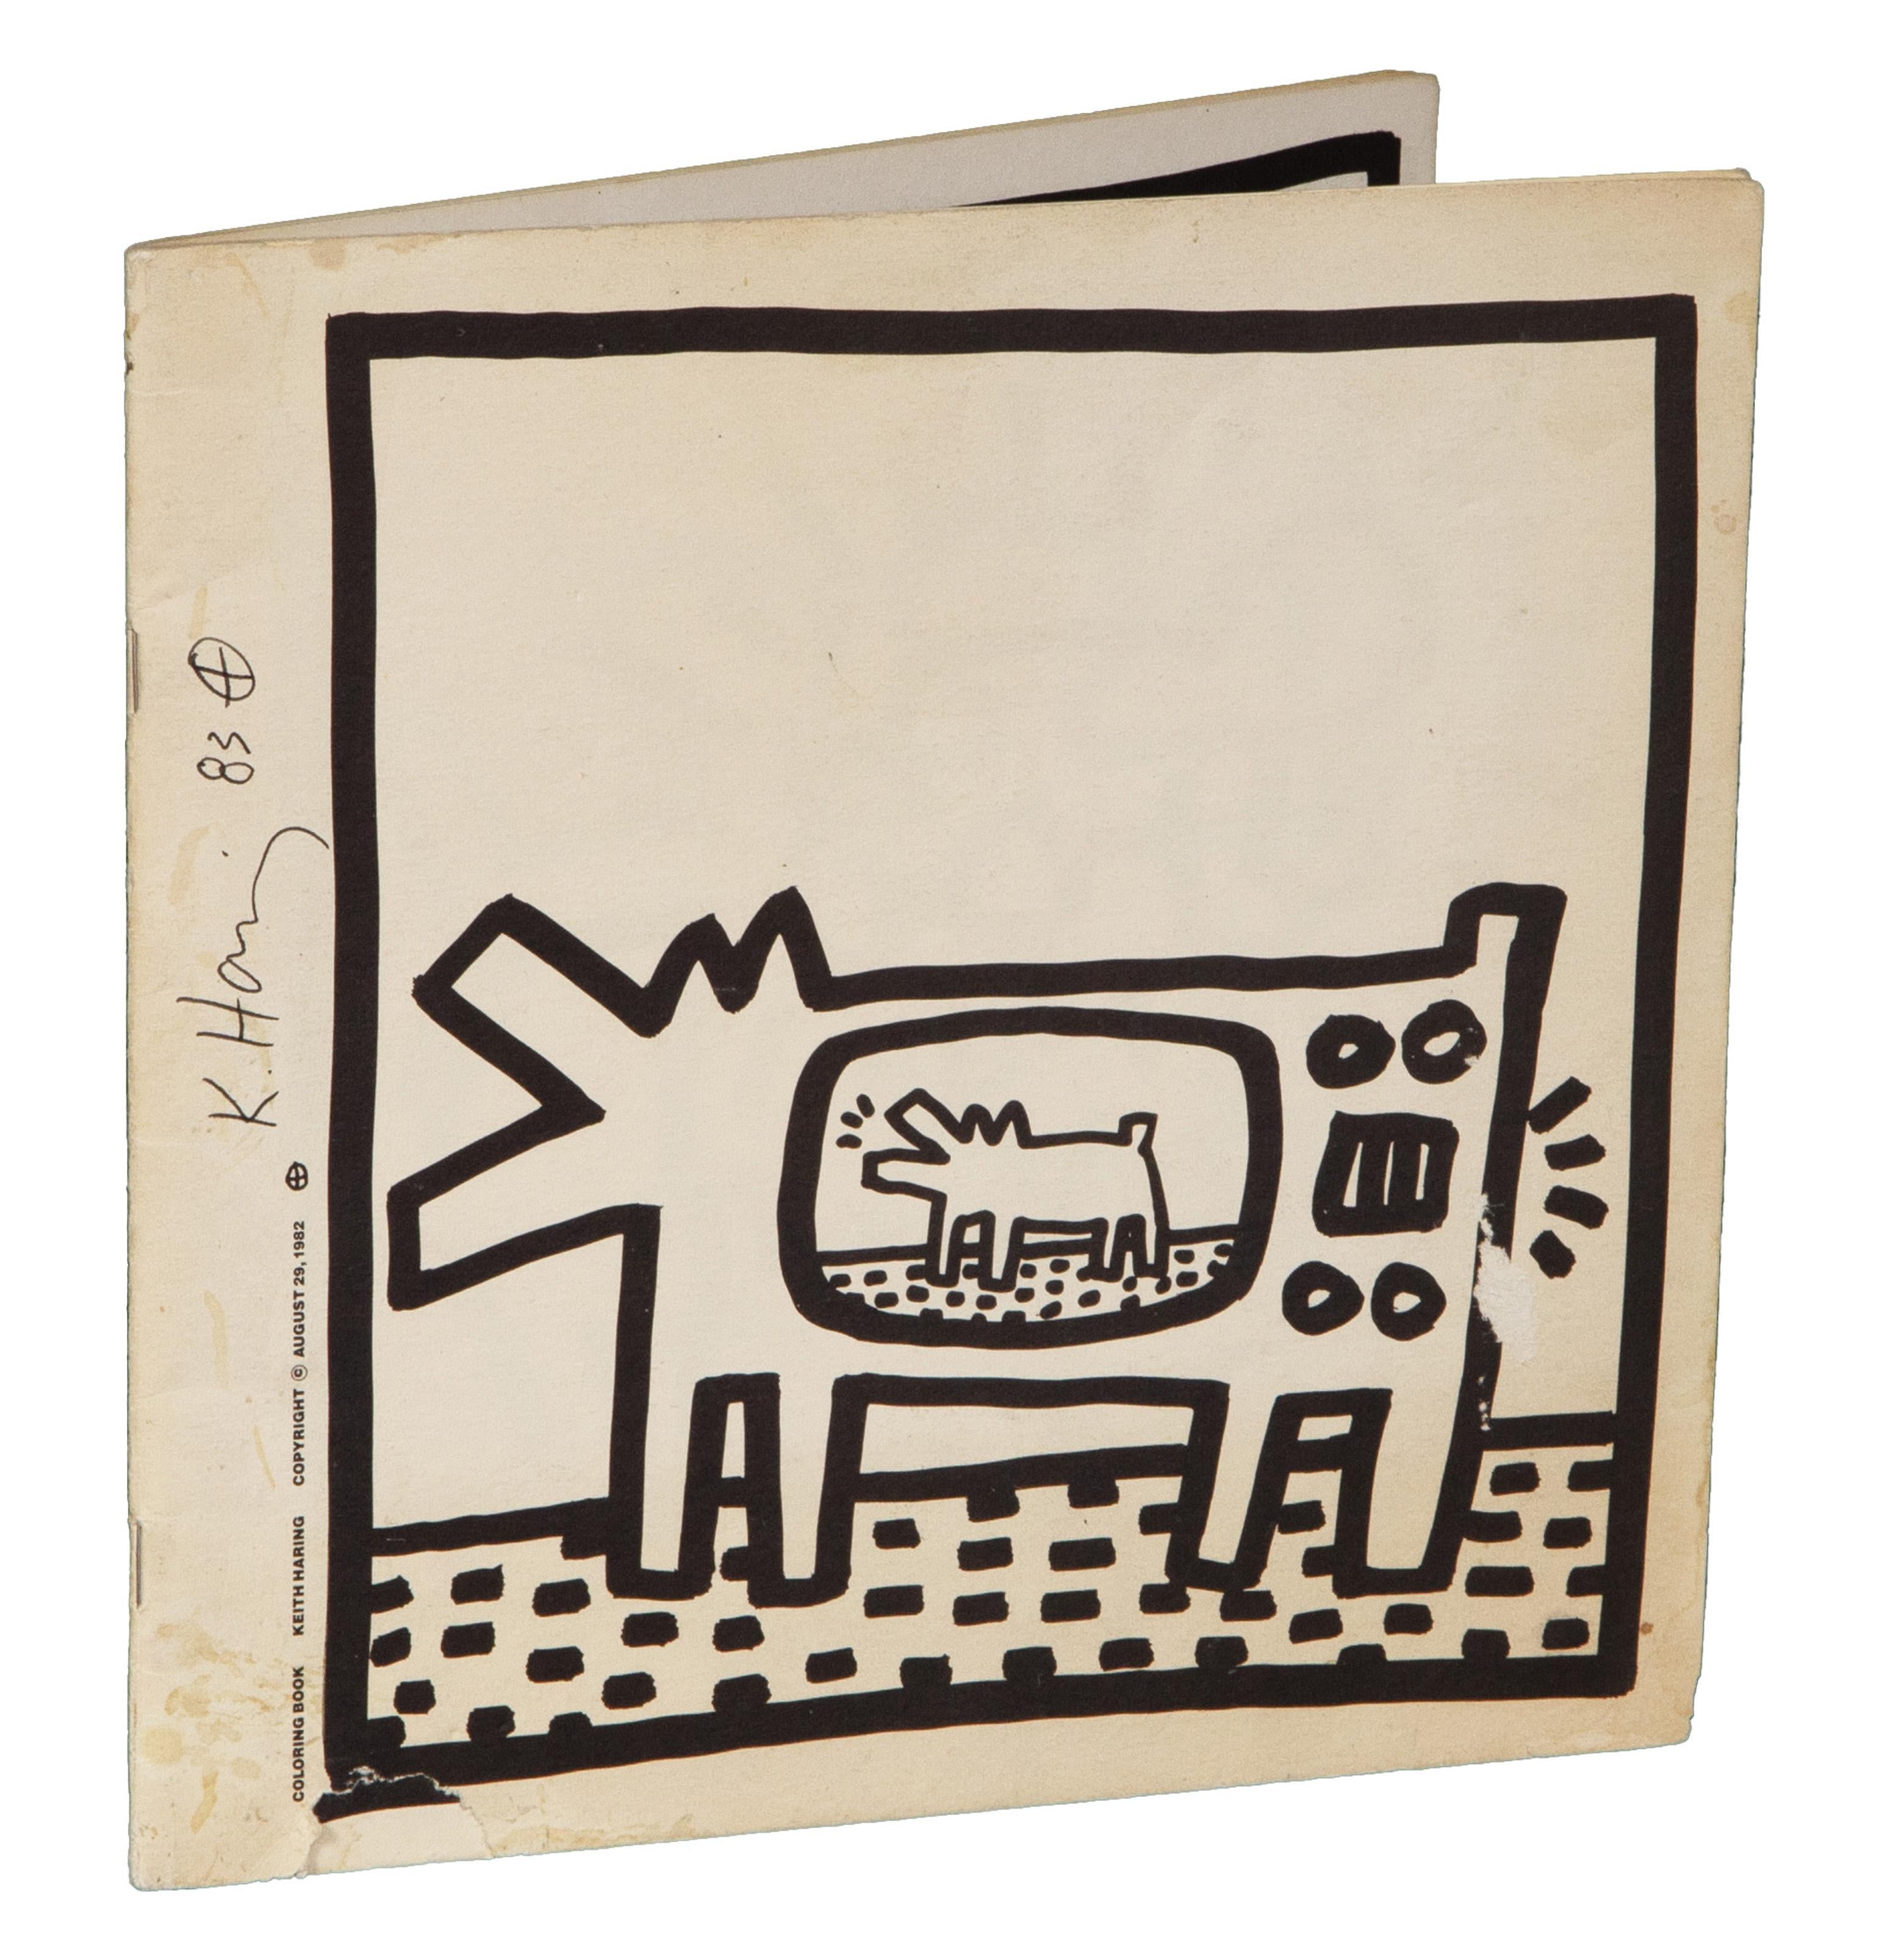 Un livre de coloriage vierge conçu et imprimé par l'artiste pop américain Keith Haring. Cet exemplaire est signé et daté au stylo par l'artiste et comporte plusieurs illustrations dans le style classique de l'artiste.

Livre de coloriage
Keith